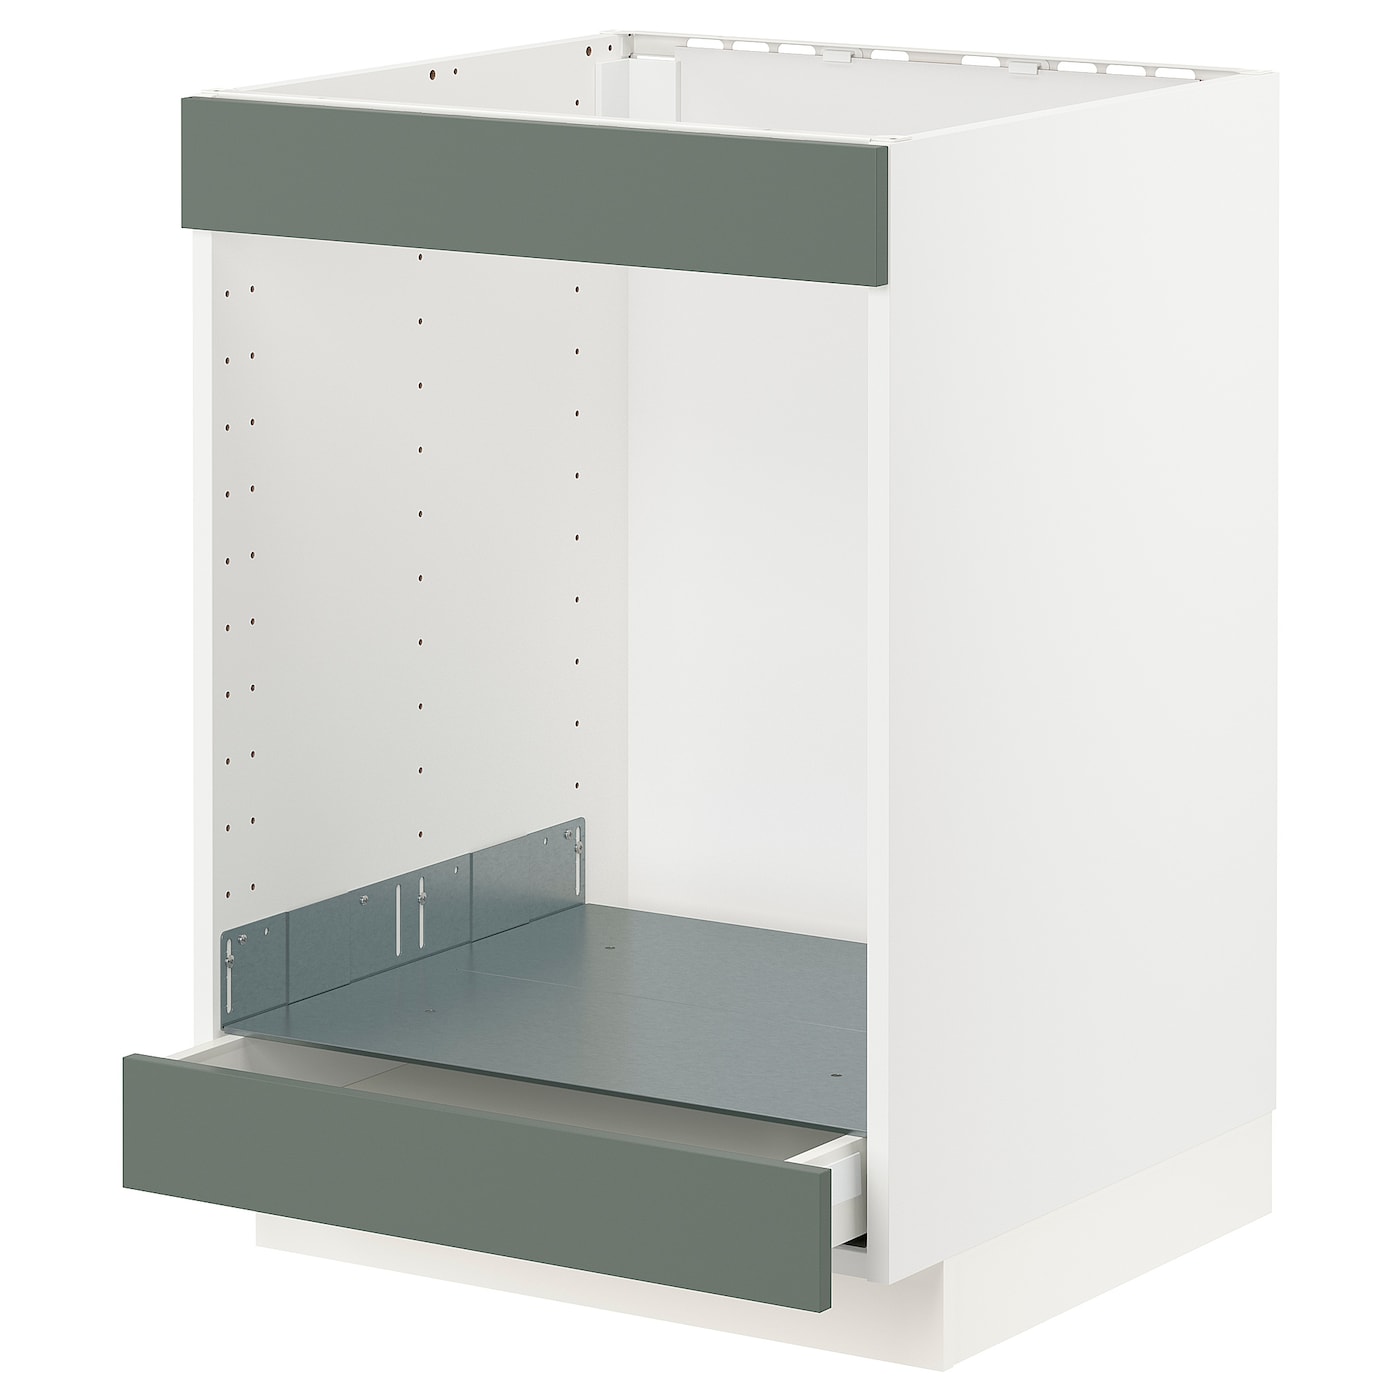 Напольный шкаф - IKEA METOD MAXIMERA, 88x62x60см, белый/серо-зеленый, МЕТОД МАКСИМЕРА ИКЕА